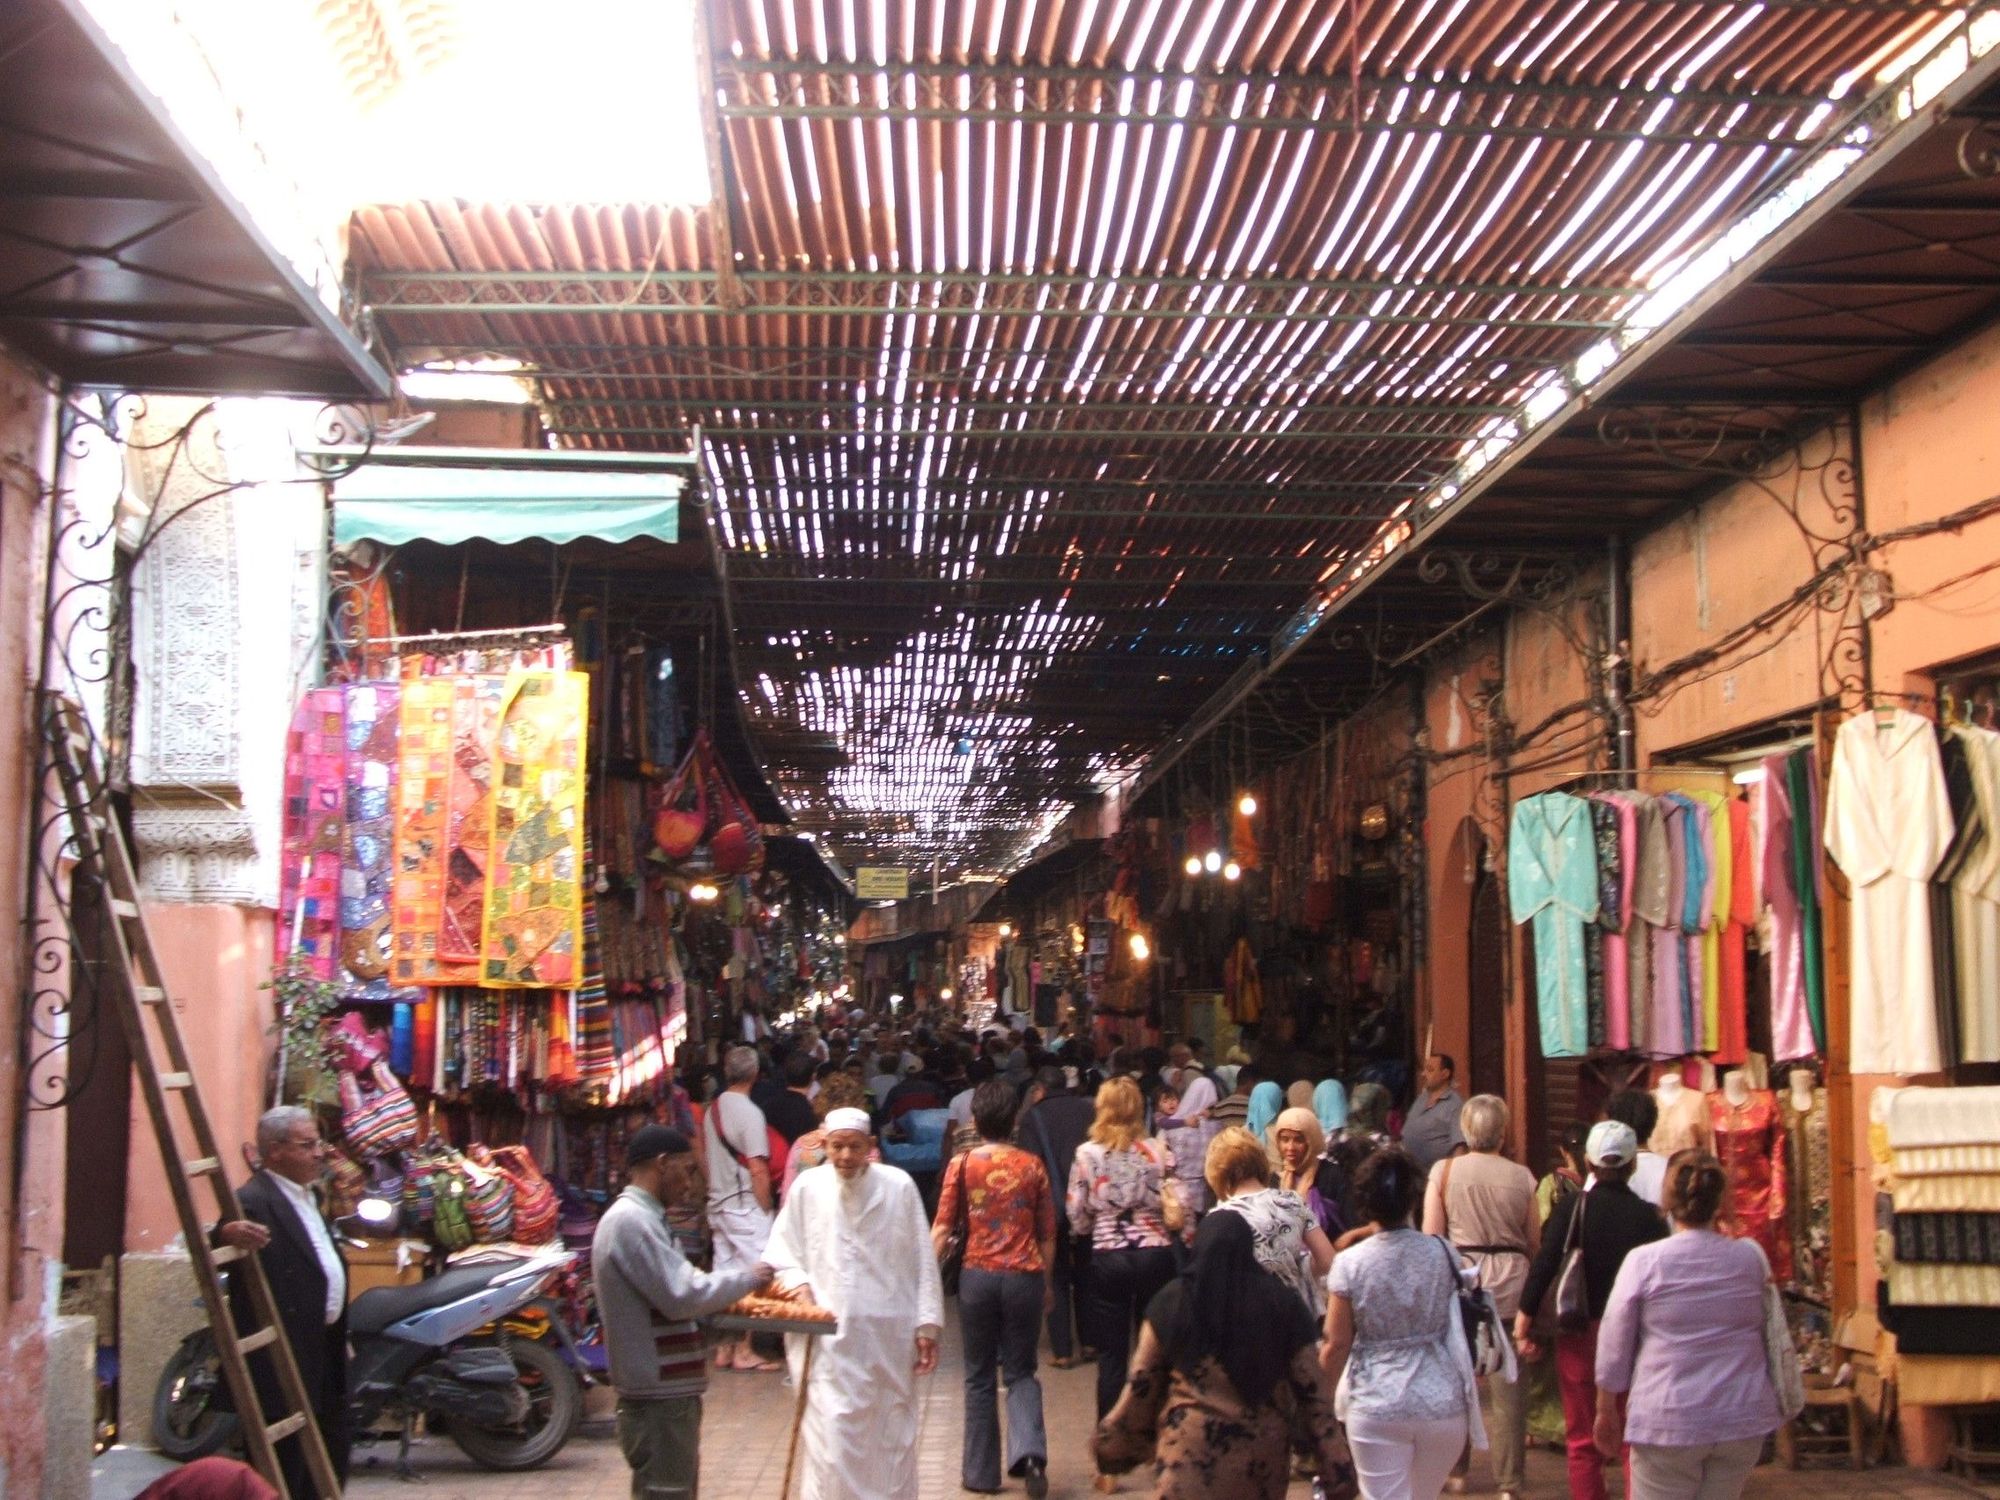 A bustling alleyway in Marrakech's medina